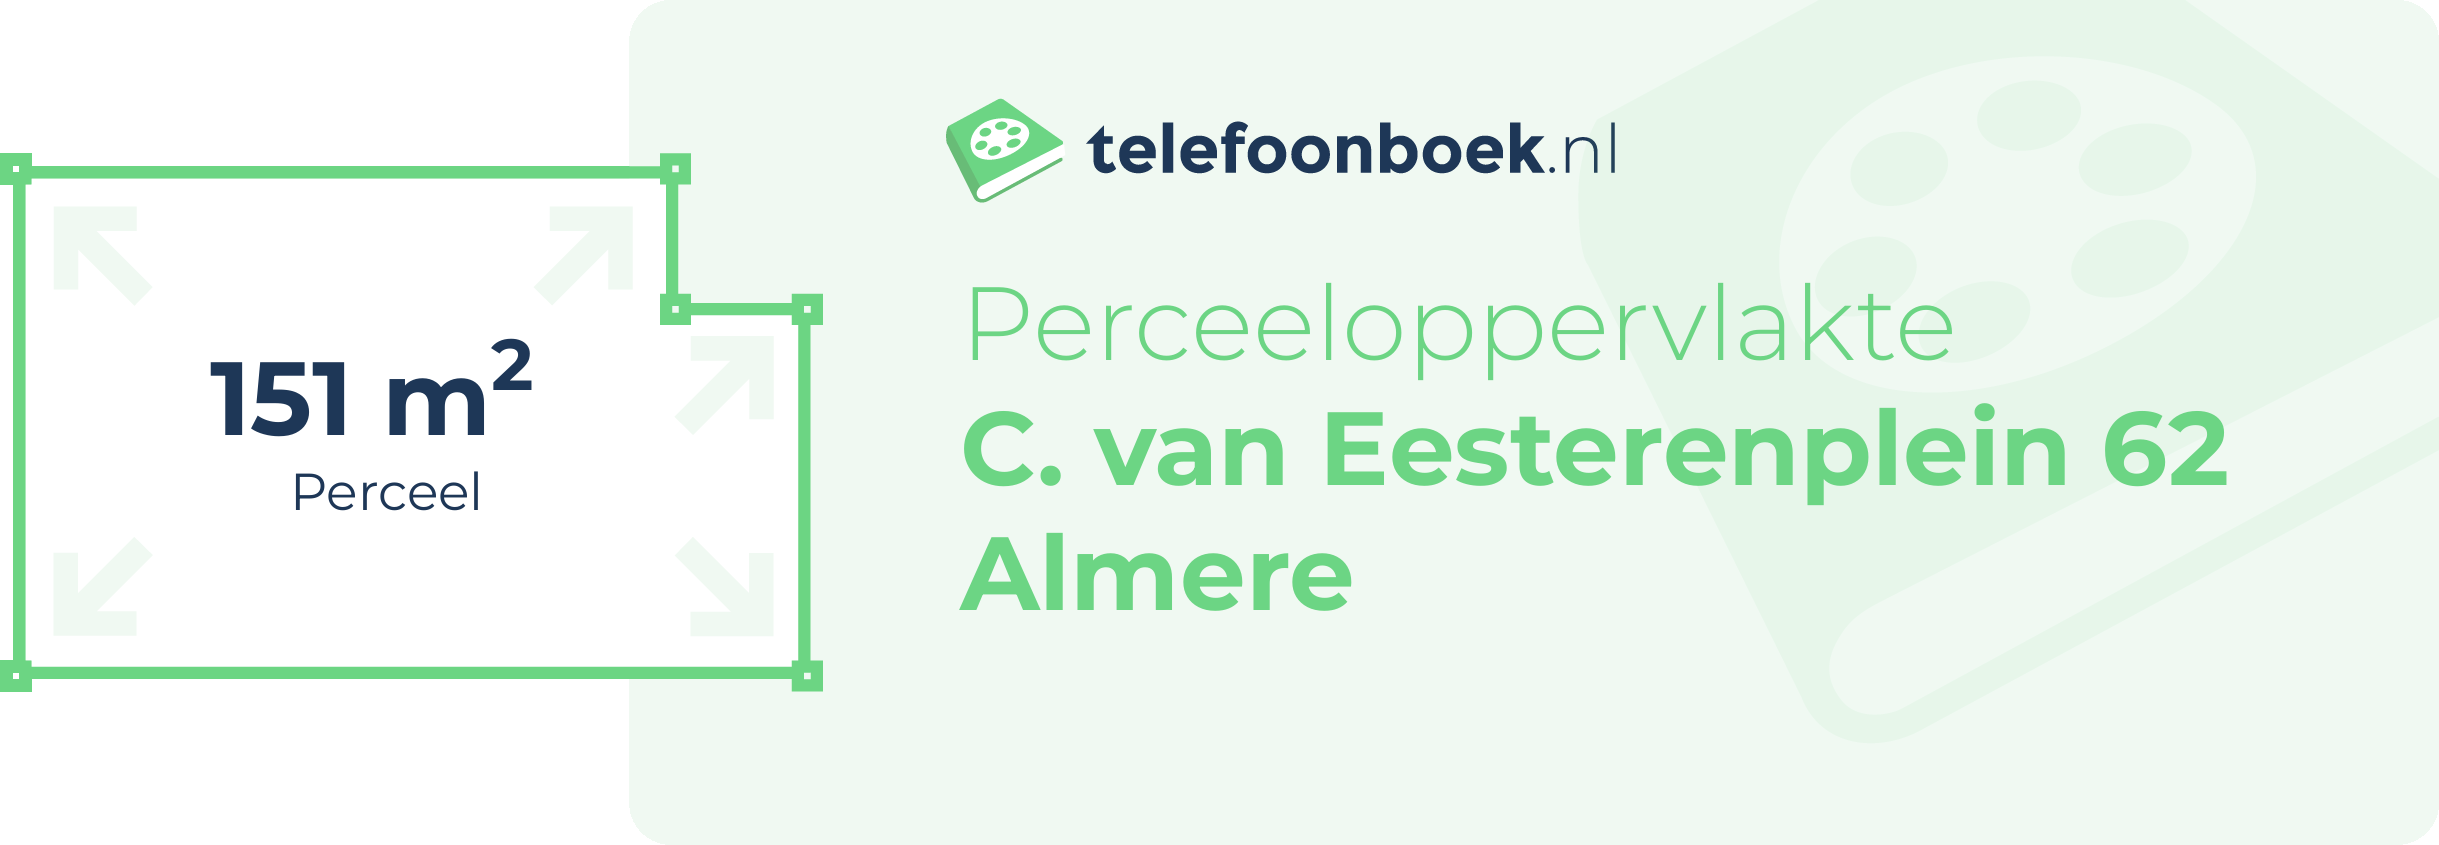 Perceeloppervlakte C. Van Eesterenplein 62 Almere